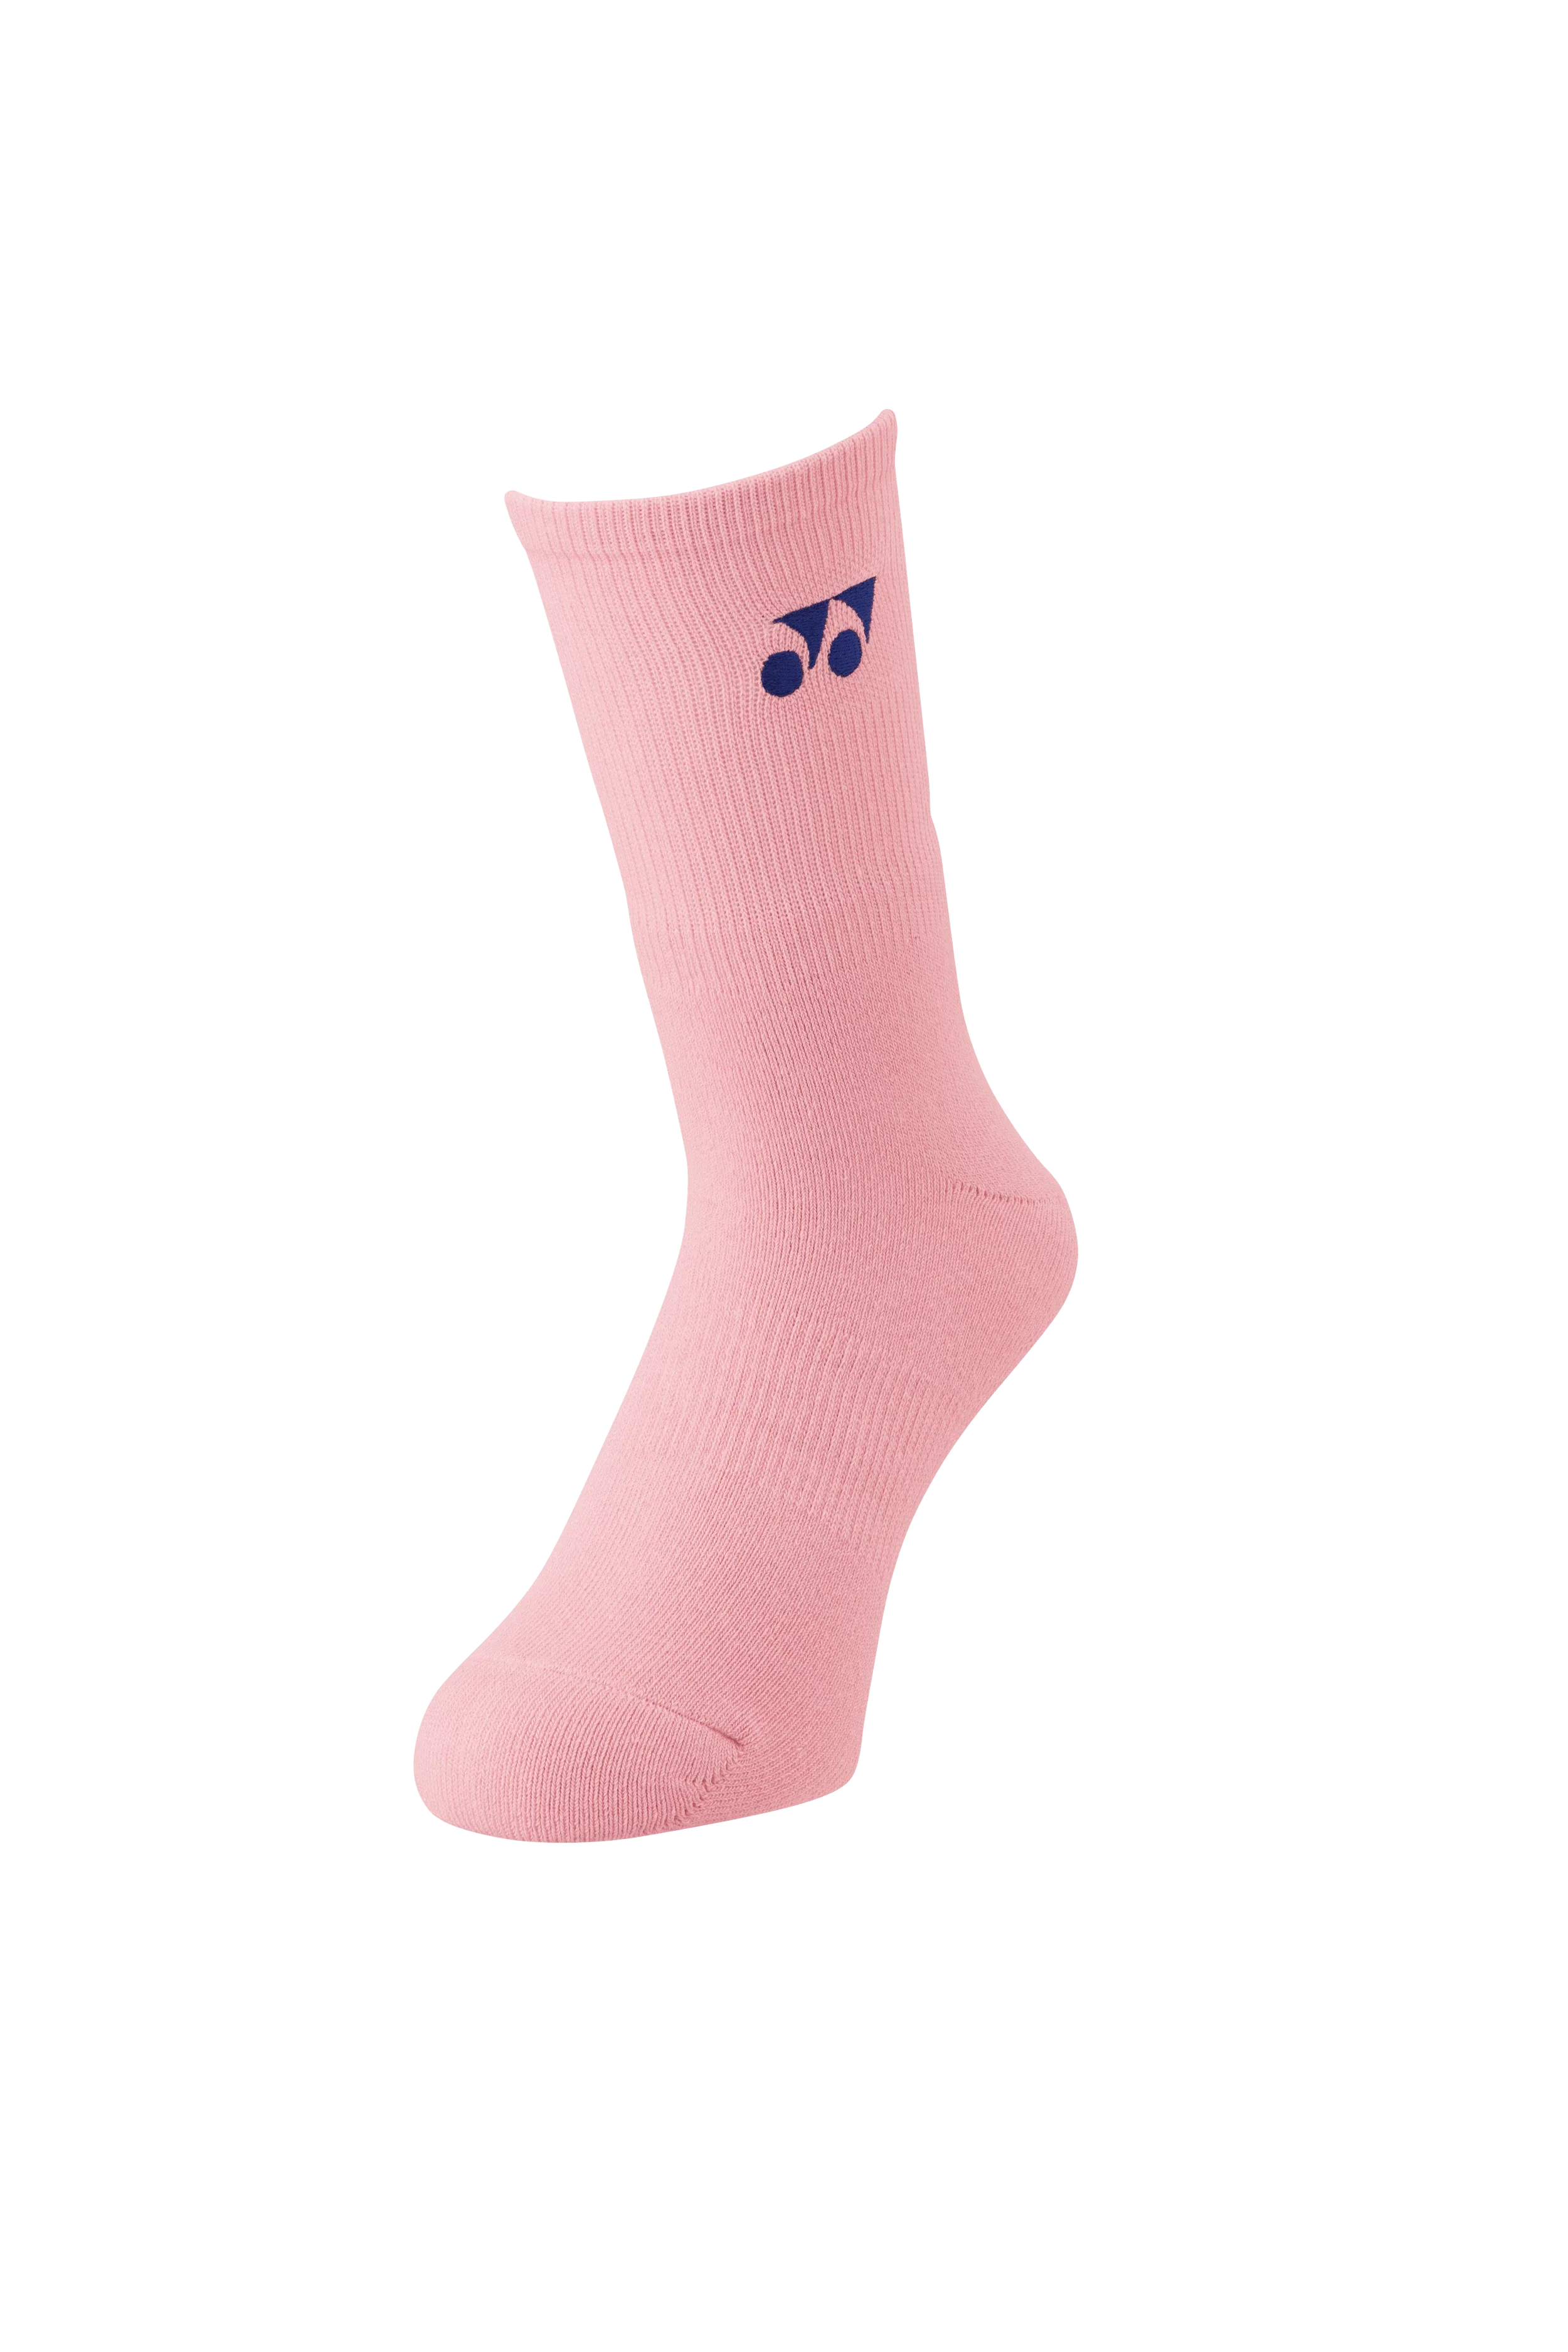 Yonex Women's Sports Socks 19120 (French Pink)